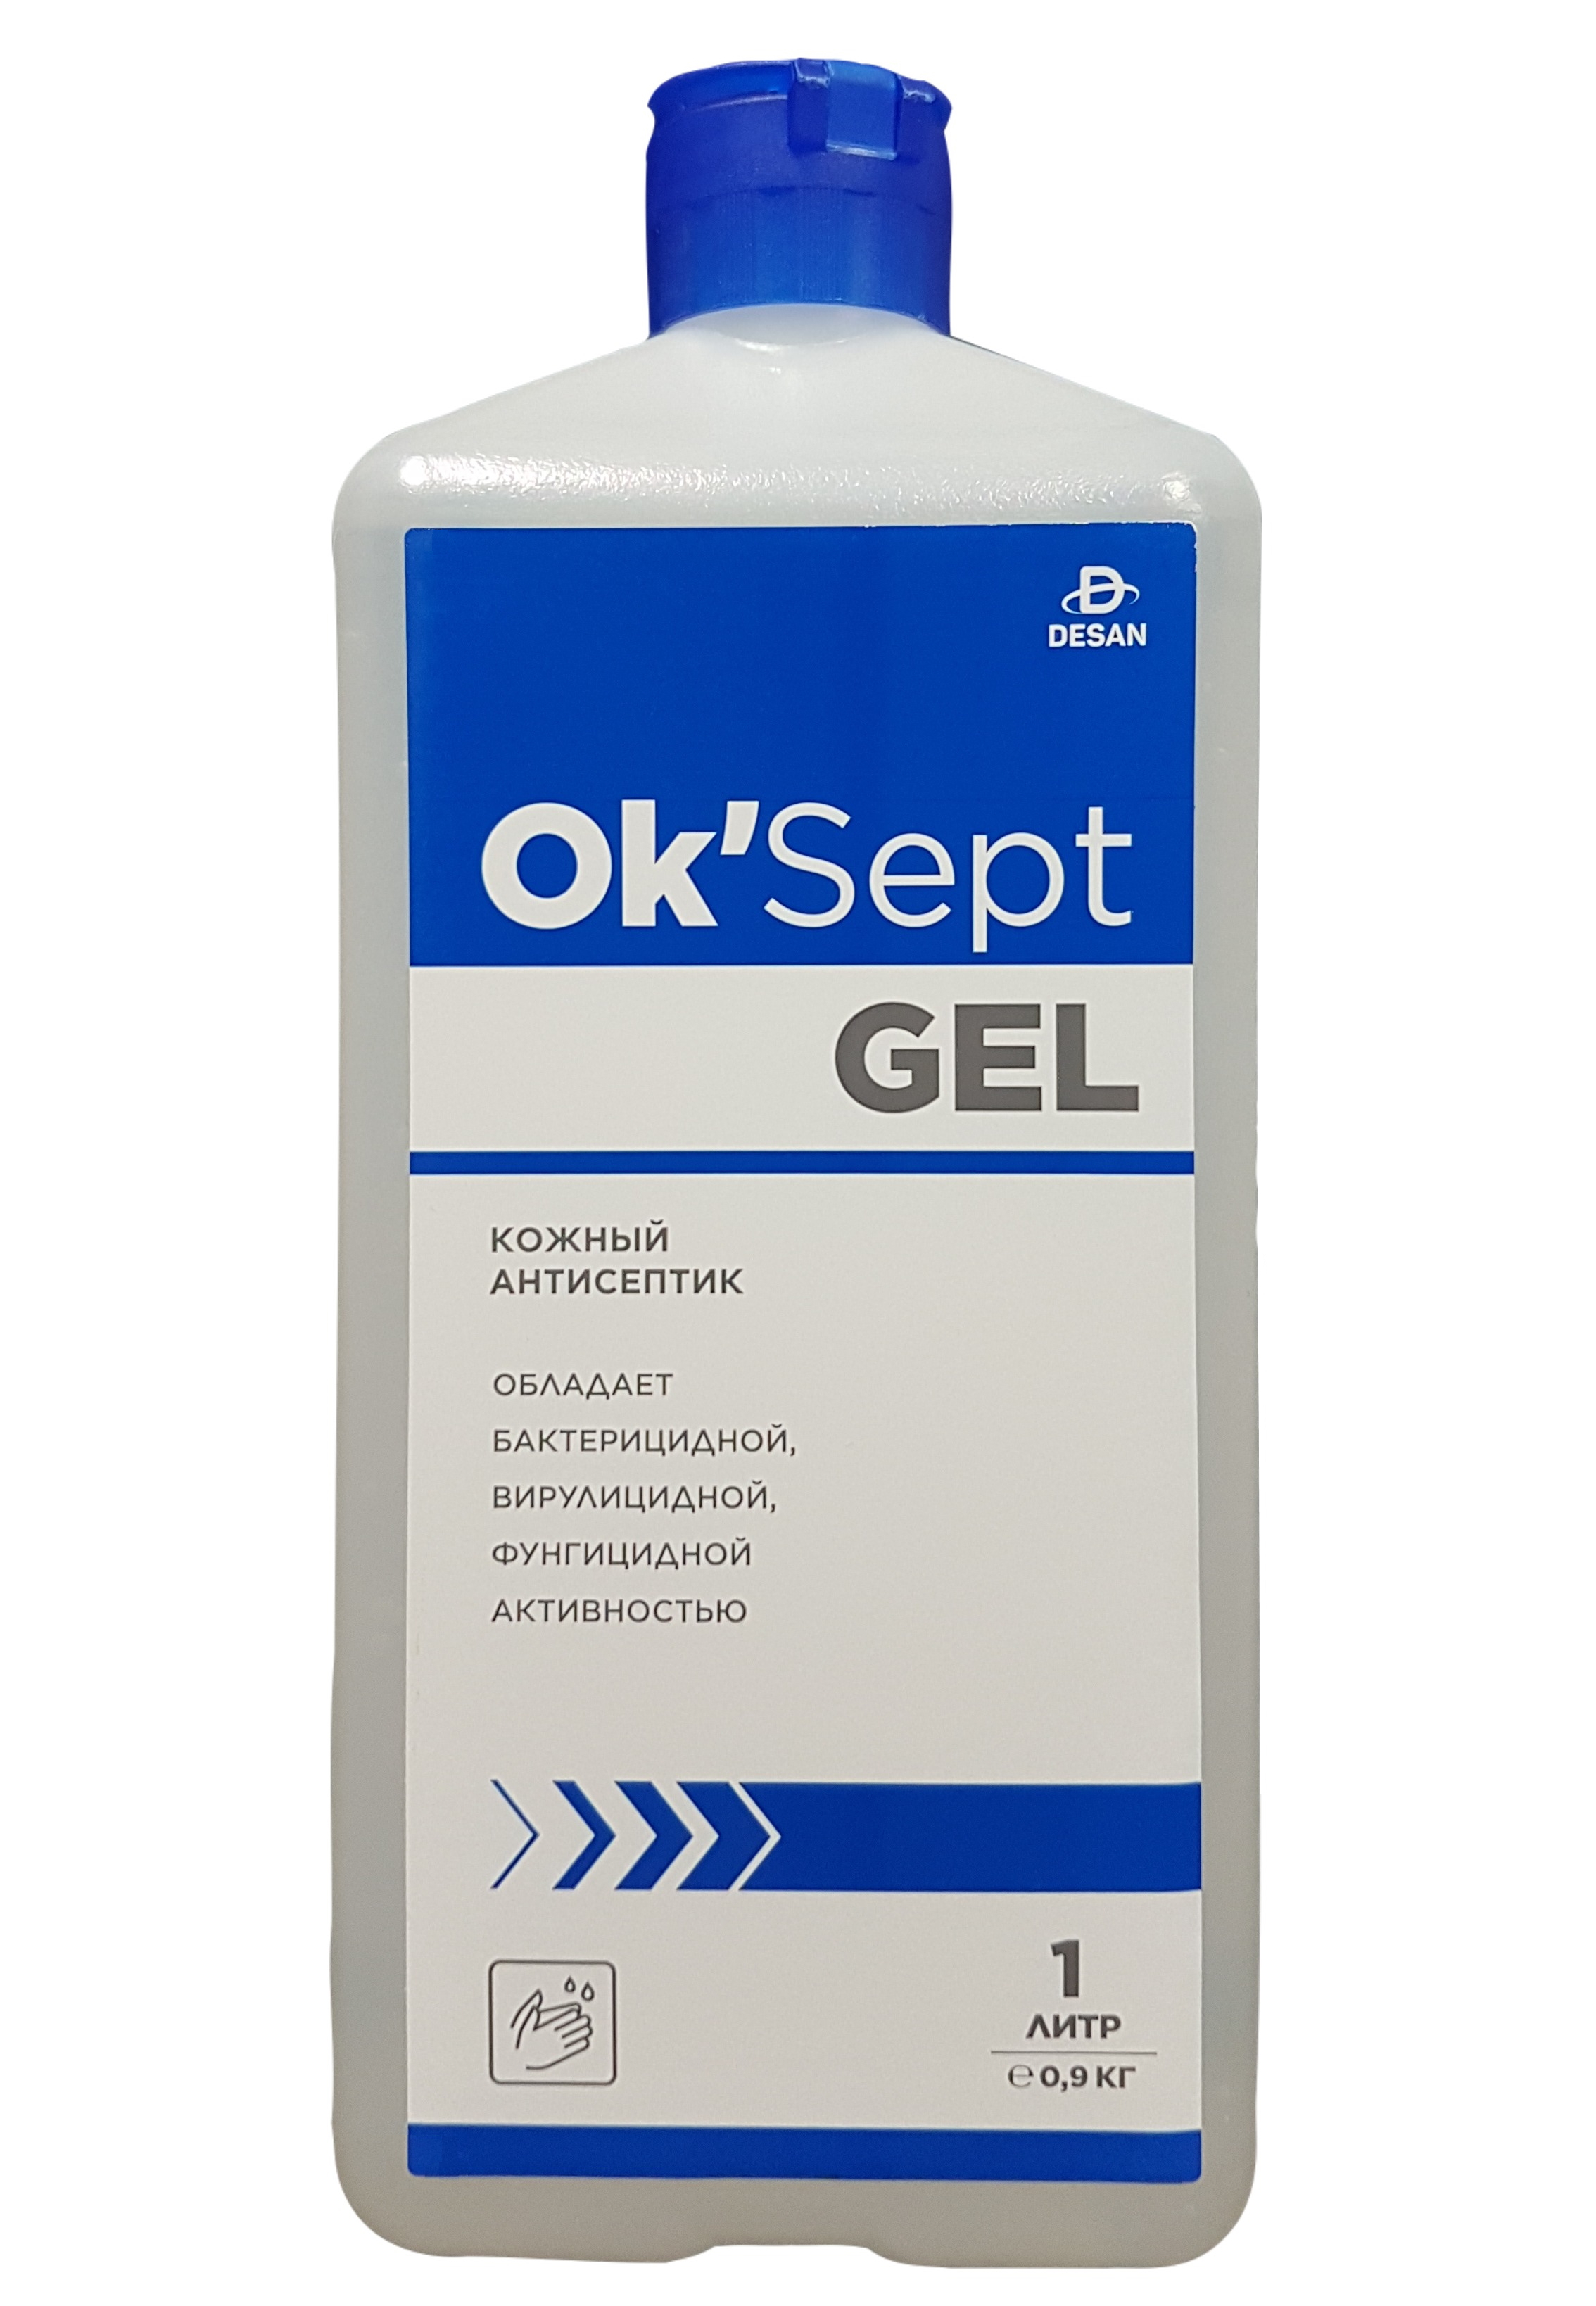 Антисептическое средство OK’Sept gel (ОК'Септ гель) 1 литр